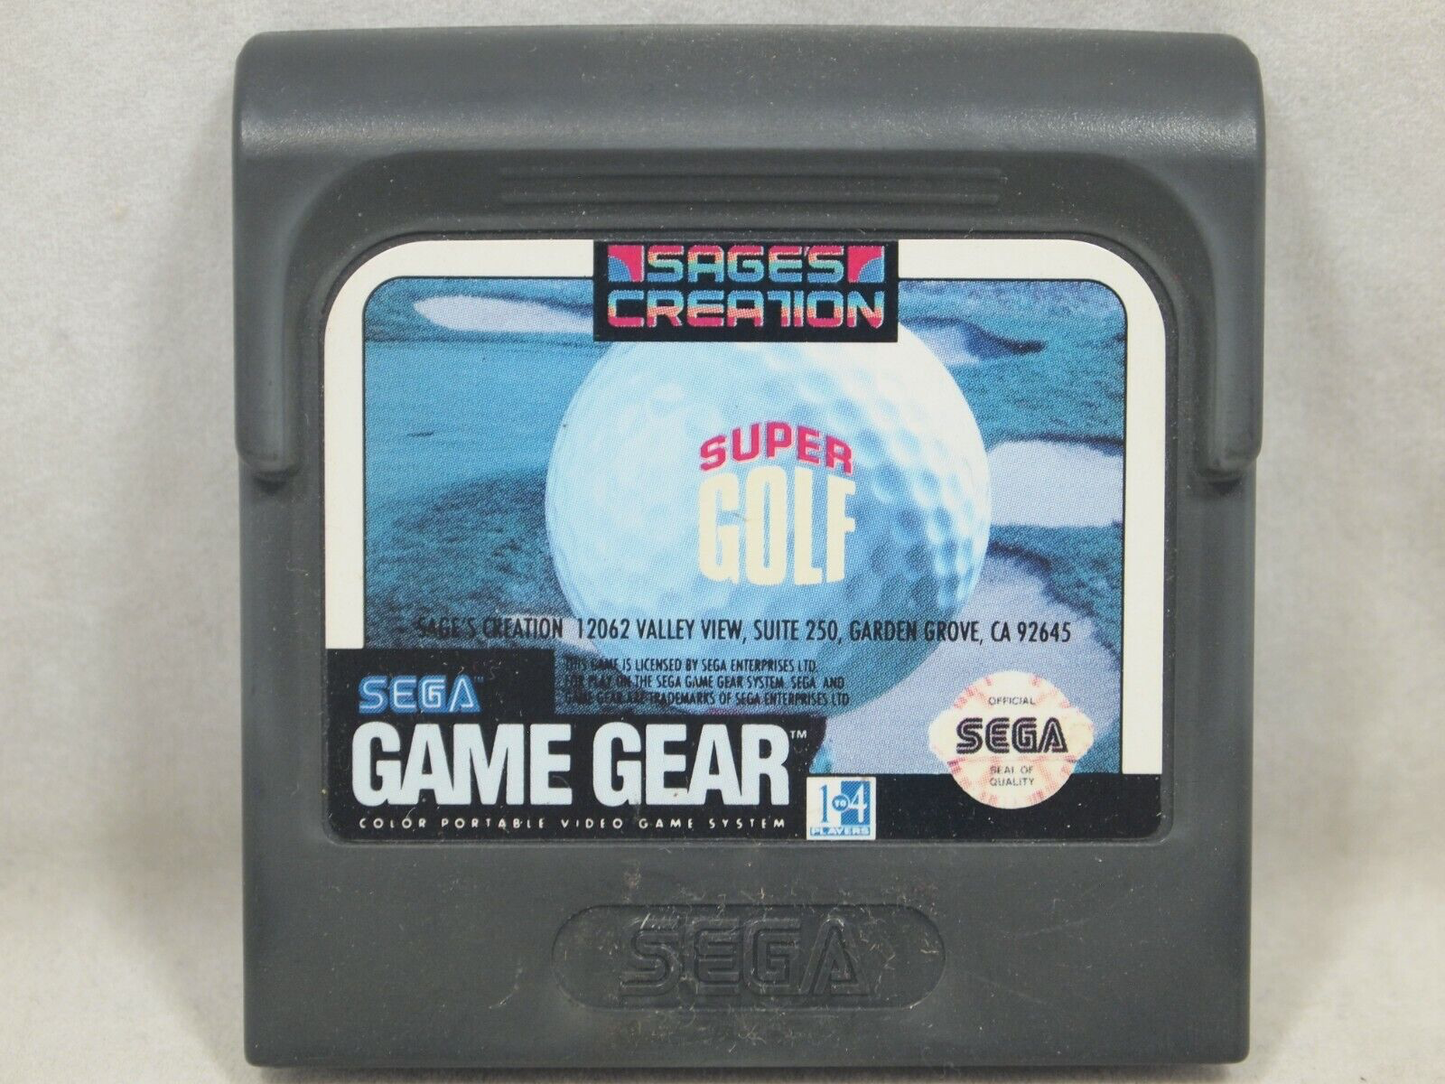 Super Golf - Game Gear